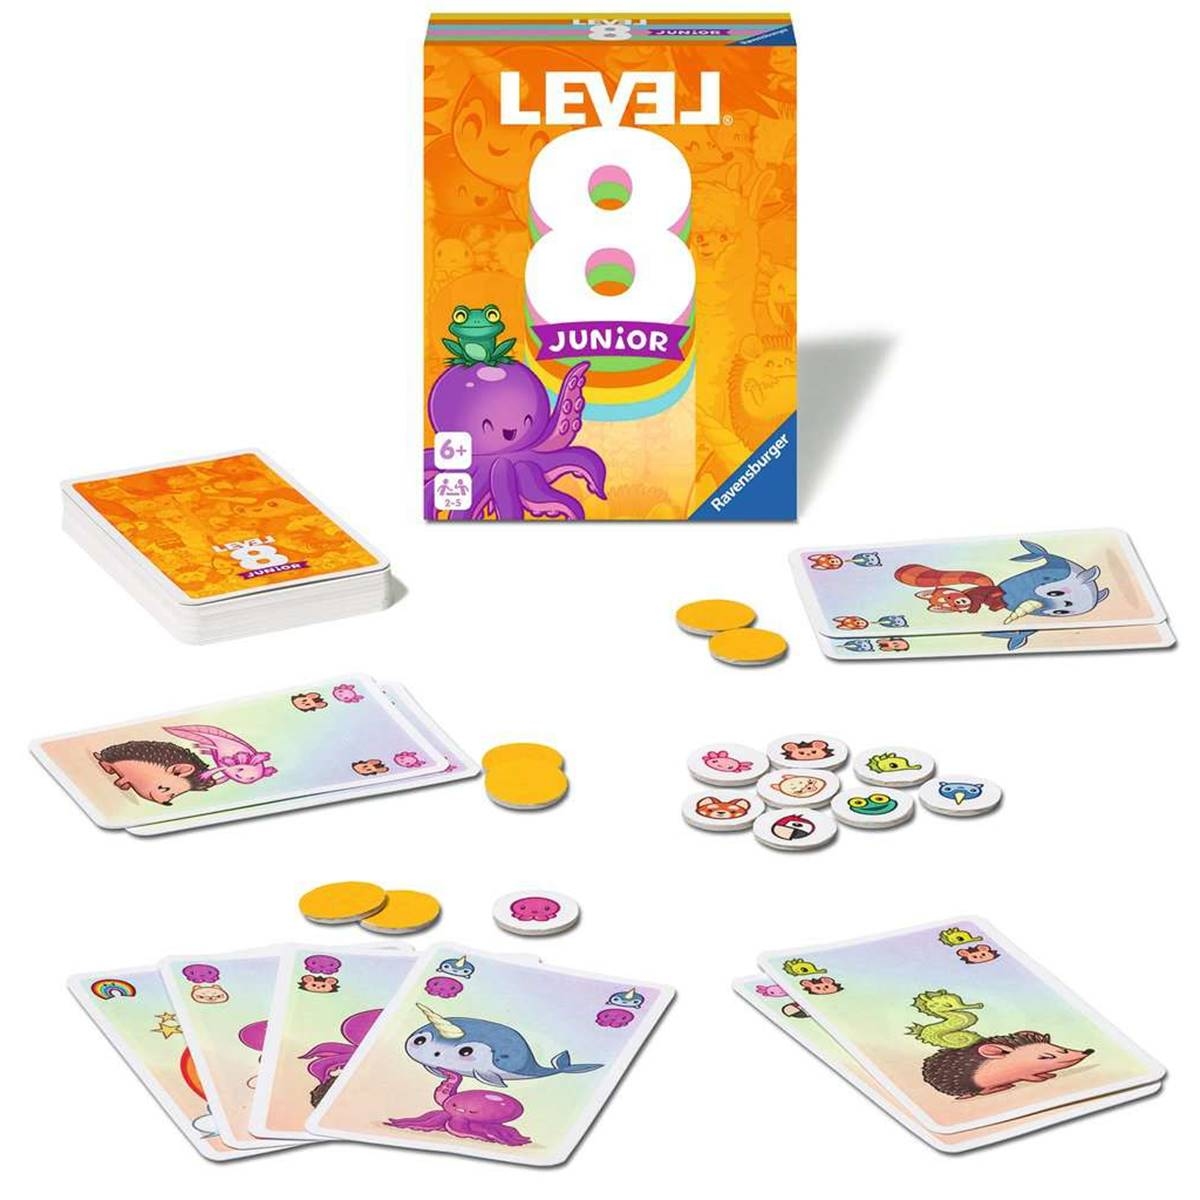 Level 8, un petit jeu de combinaisons de cartes agréable